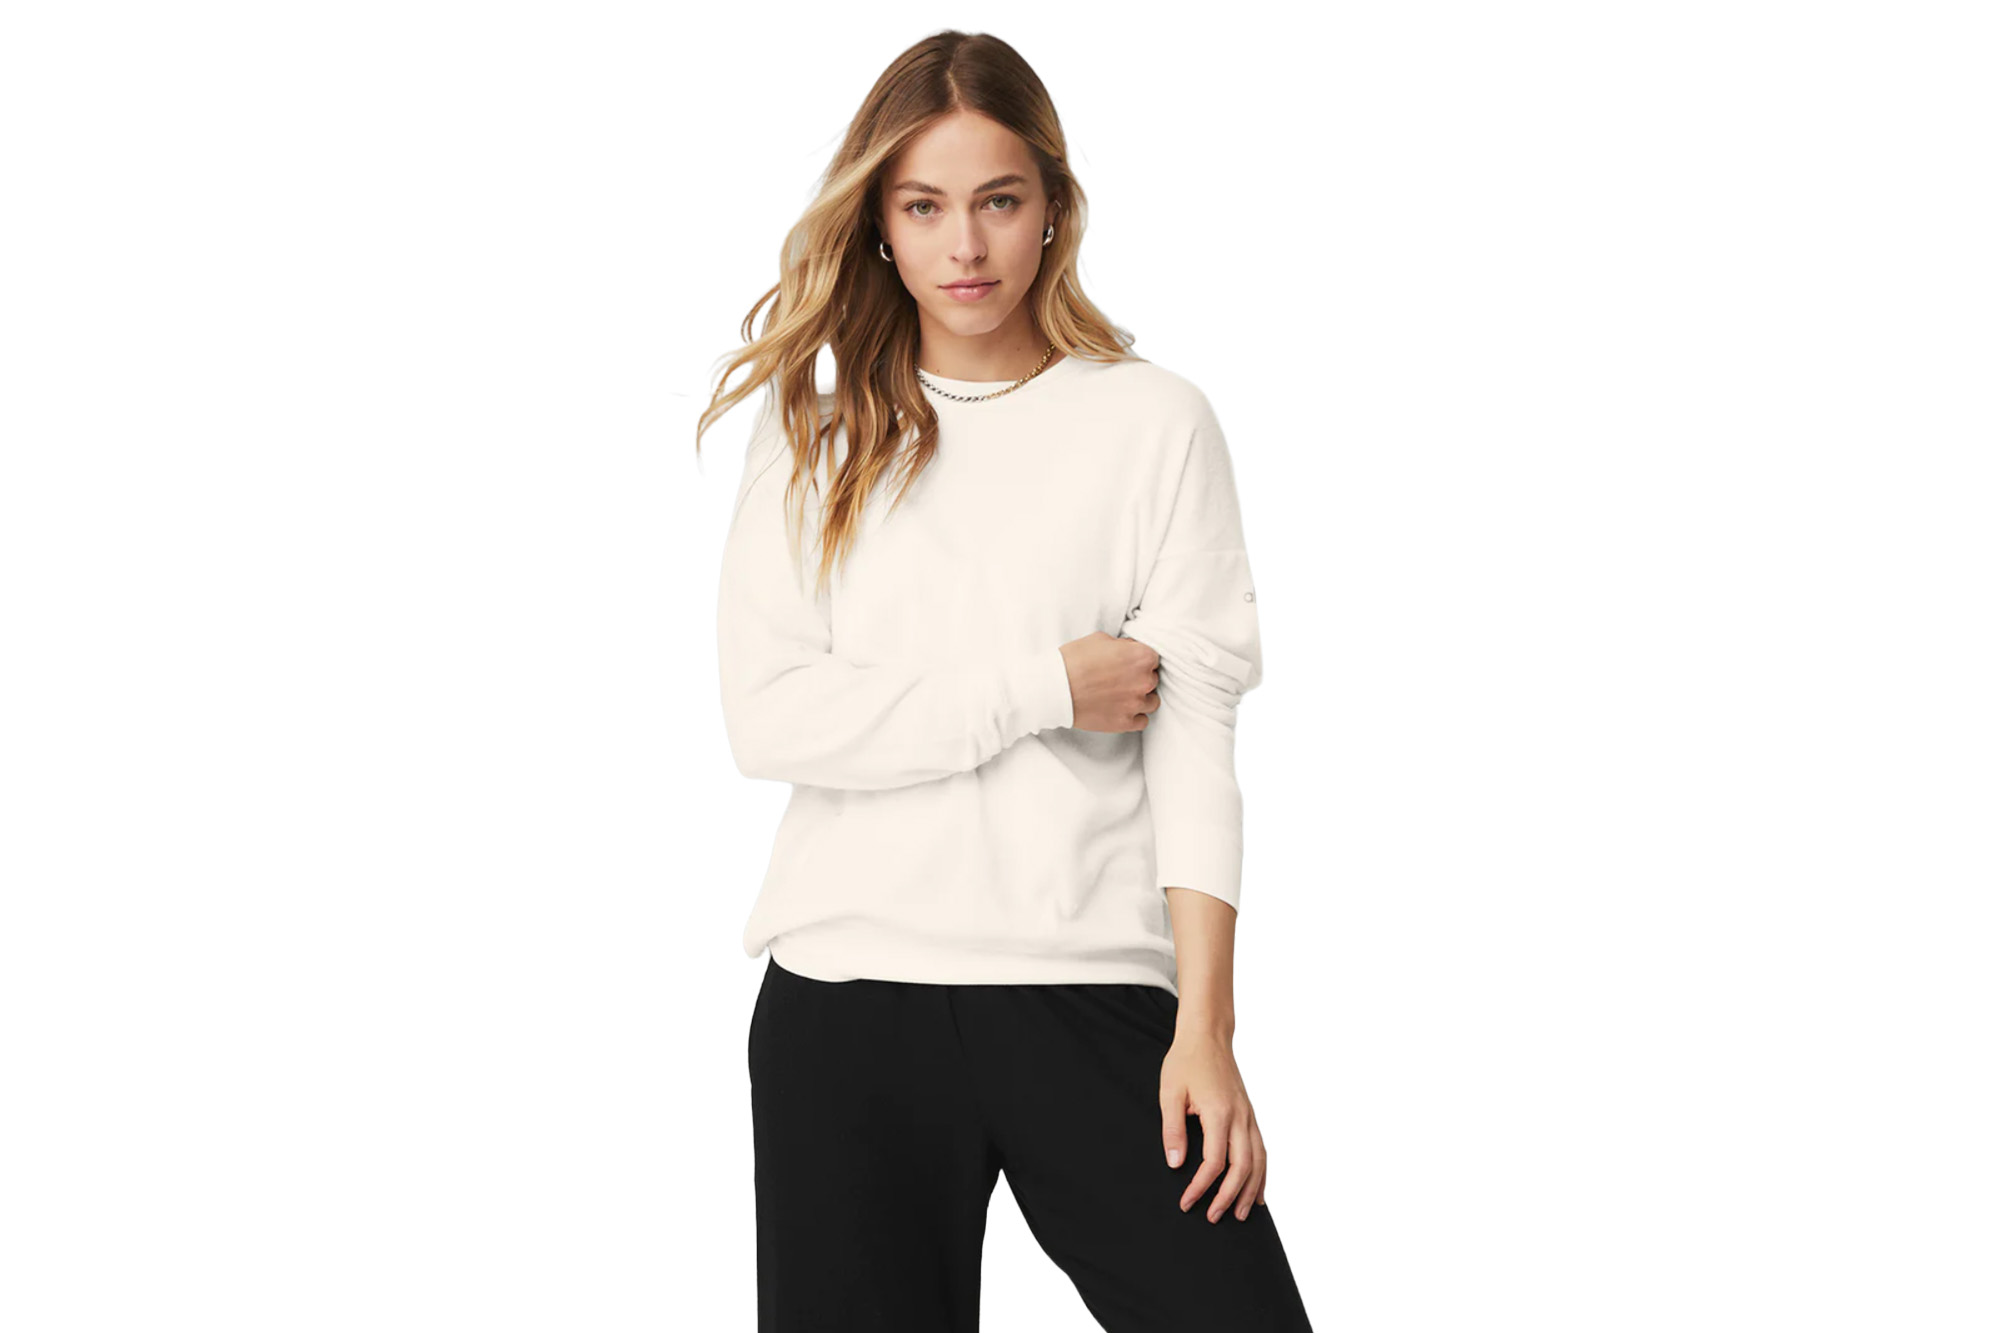 Ein Model in einem cremefarbenen Pullover und schwarzen Jogginghosen